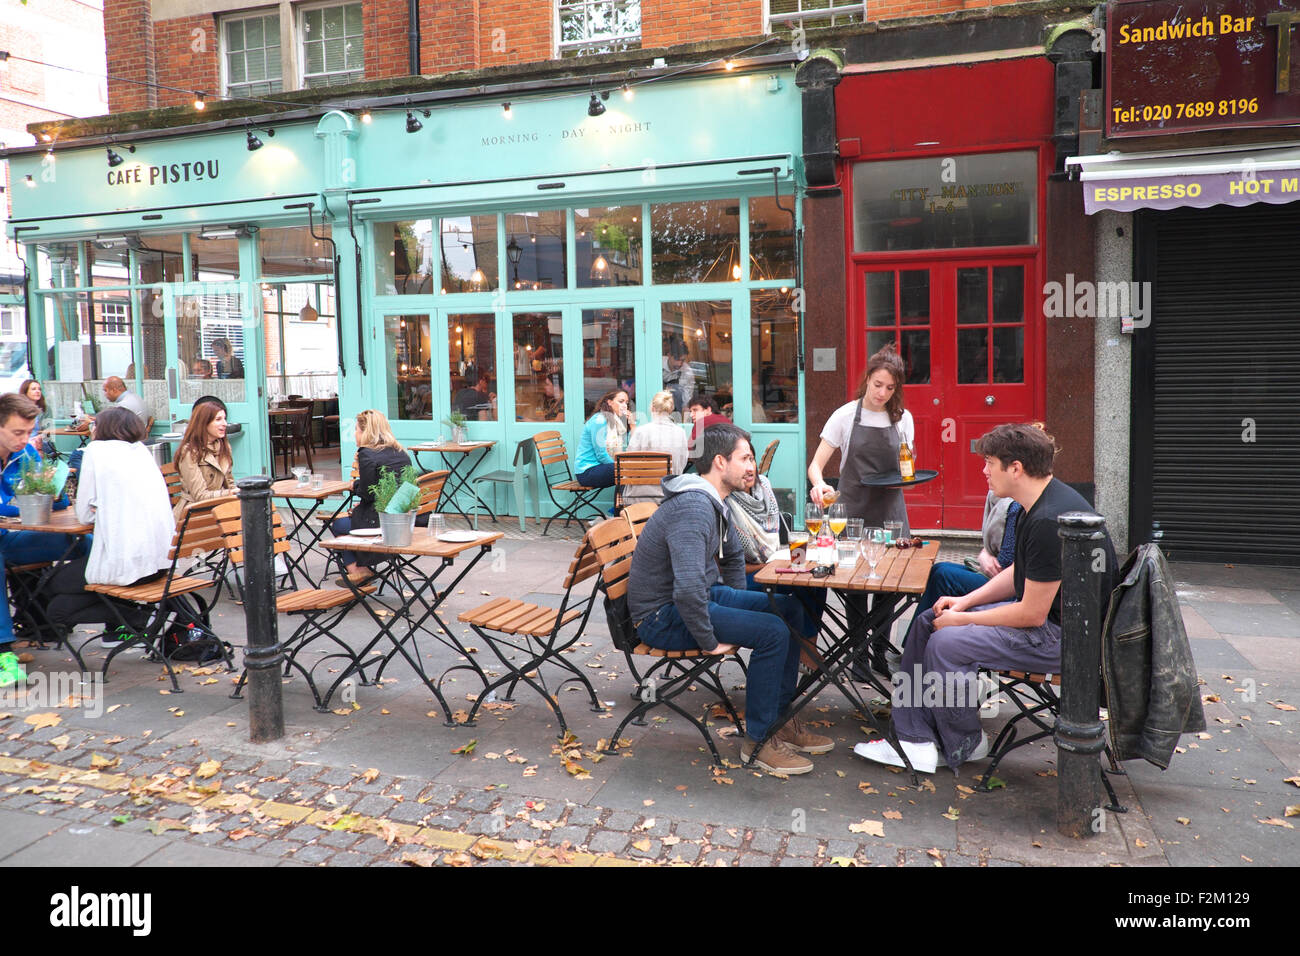 London cafe immagini e fotografie stock ad alta risoluzione - Alamy